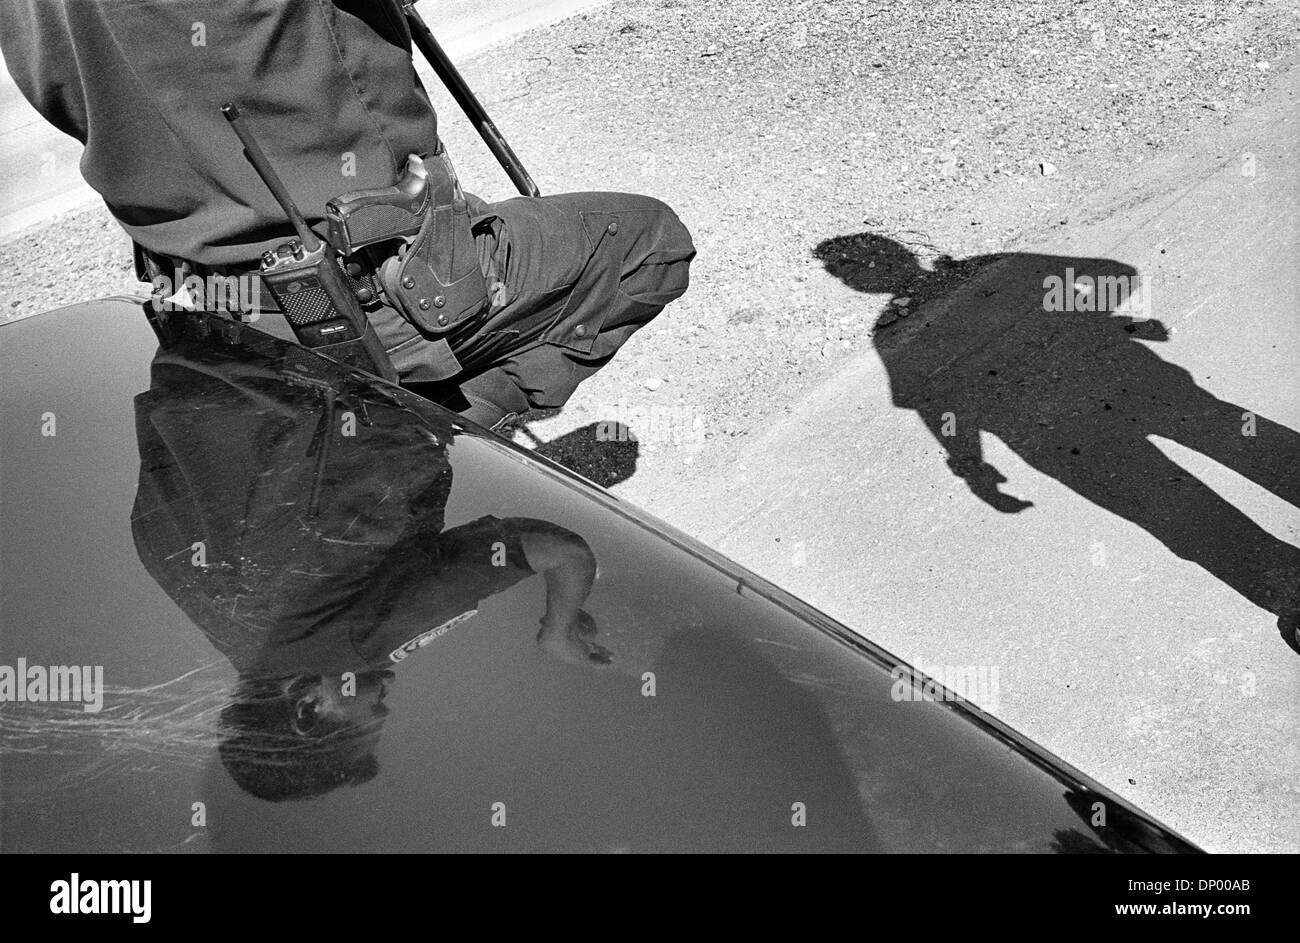 21 févr. 2006 ; El Paso, TX, USA ; (Photo d'archives ; 1997) Une discussion entre un shérif adjoint et officier de patrouille à la frontière. Crédit obligatoire : Photo par Jérôme Brunet/ZUMA Press. (©) Copyright 2006 by Jerome Brunet Banque D'Images